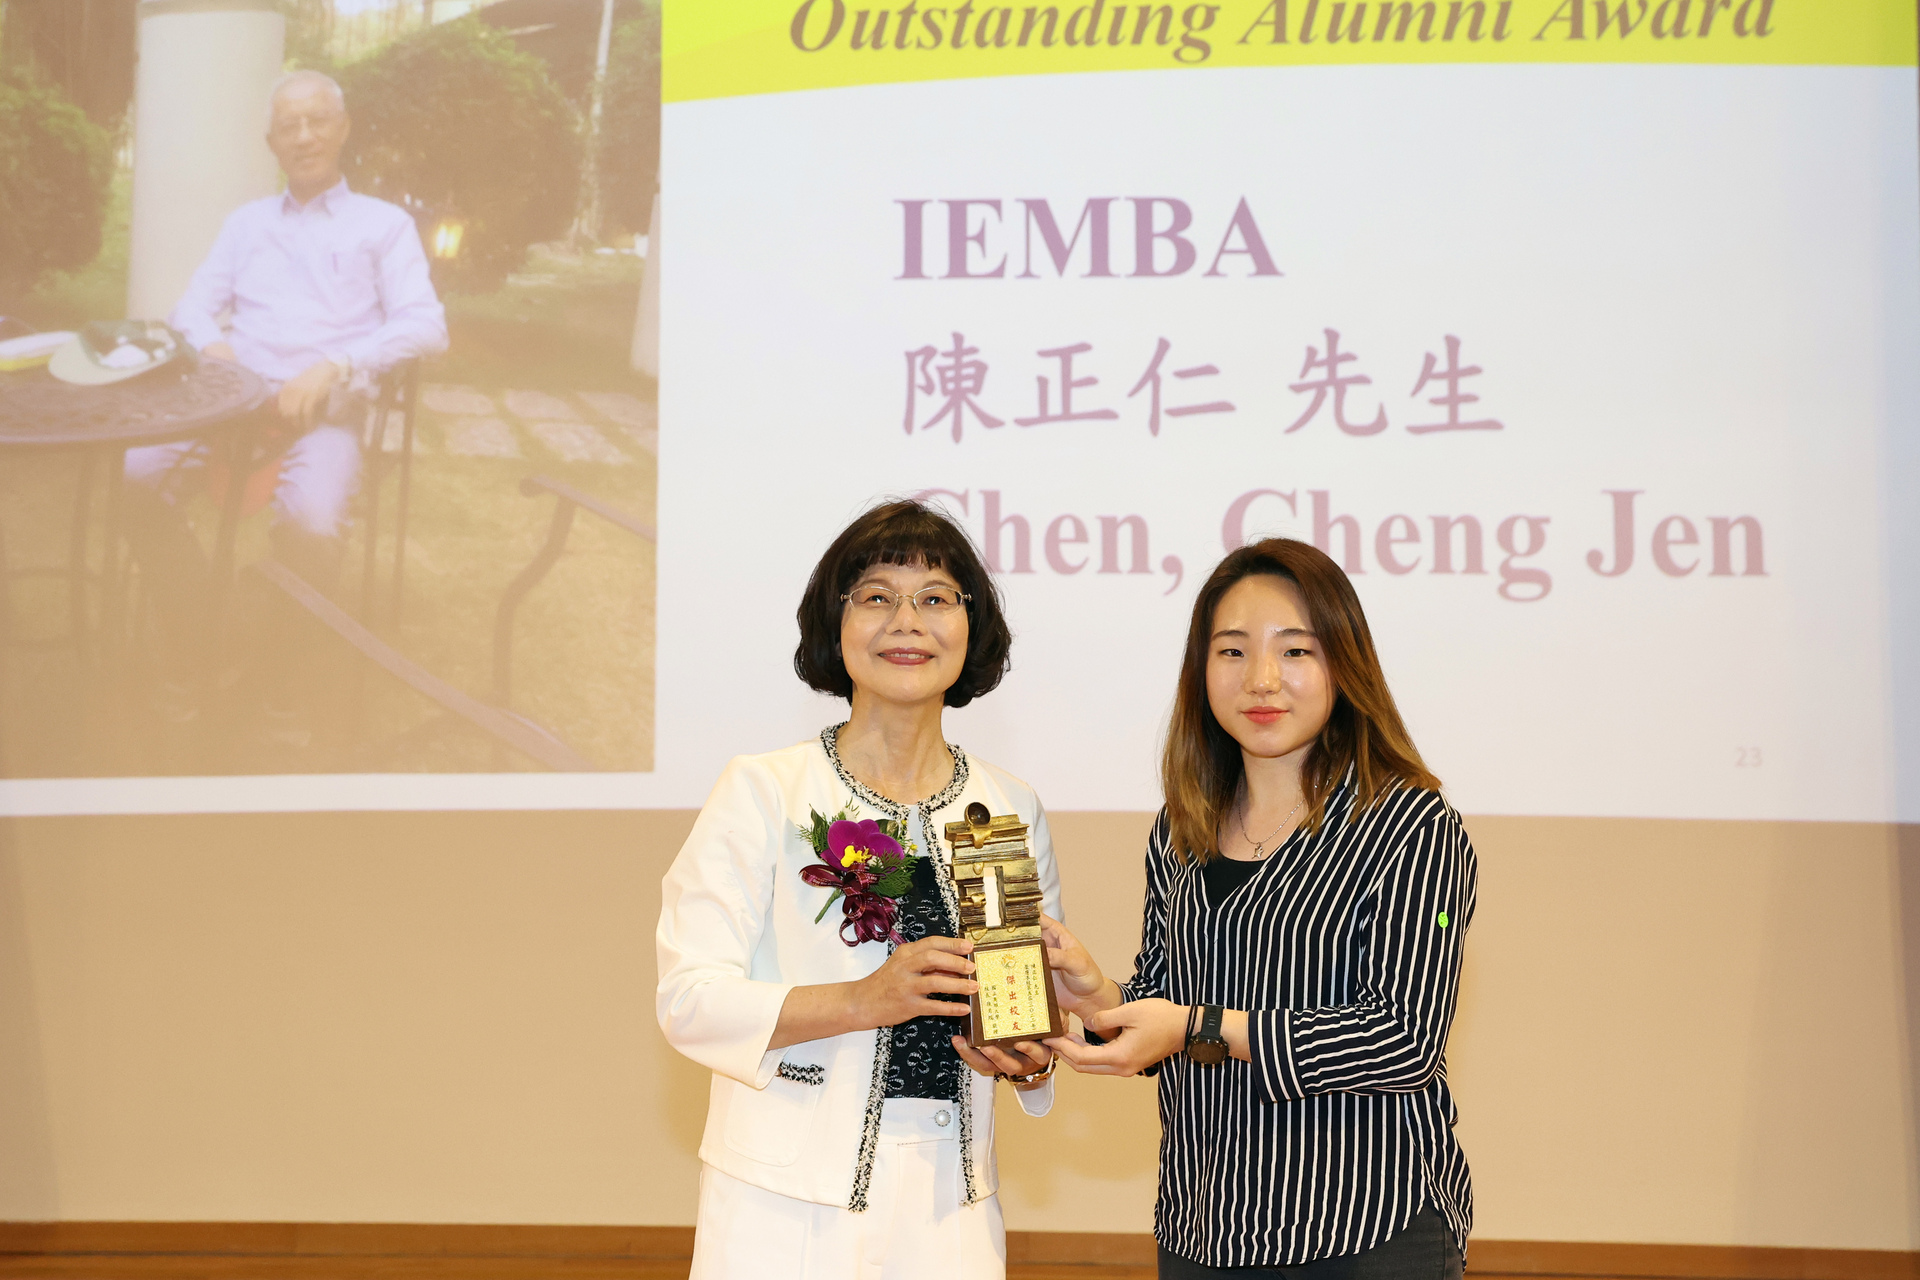 高雄大學校長陳月端（左）頒贈傑出校友獎座予IEMBA碩士陳正仁，由女兒代領。